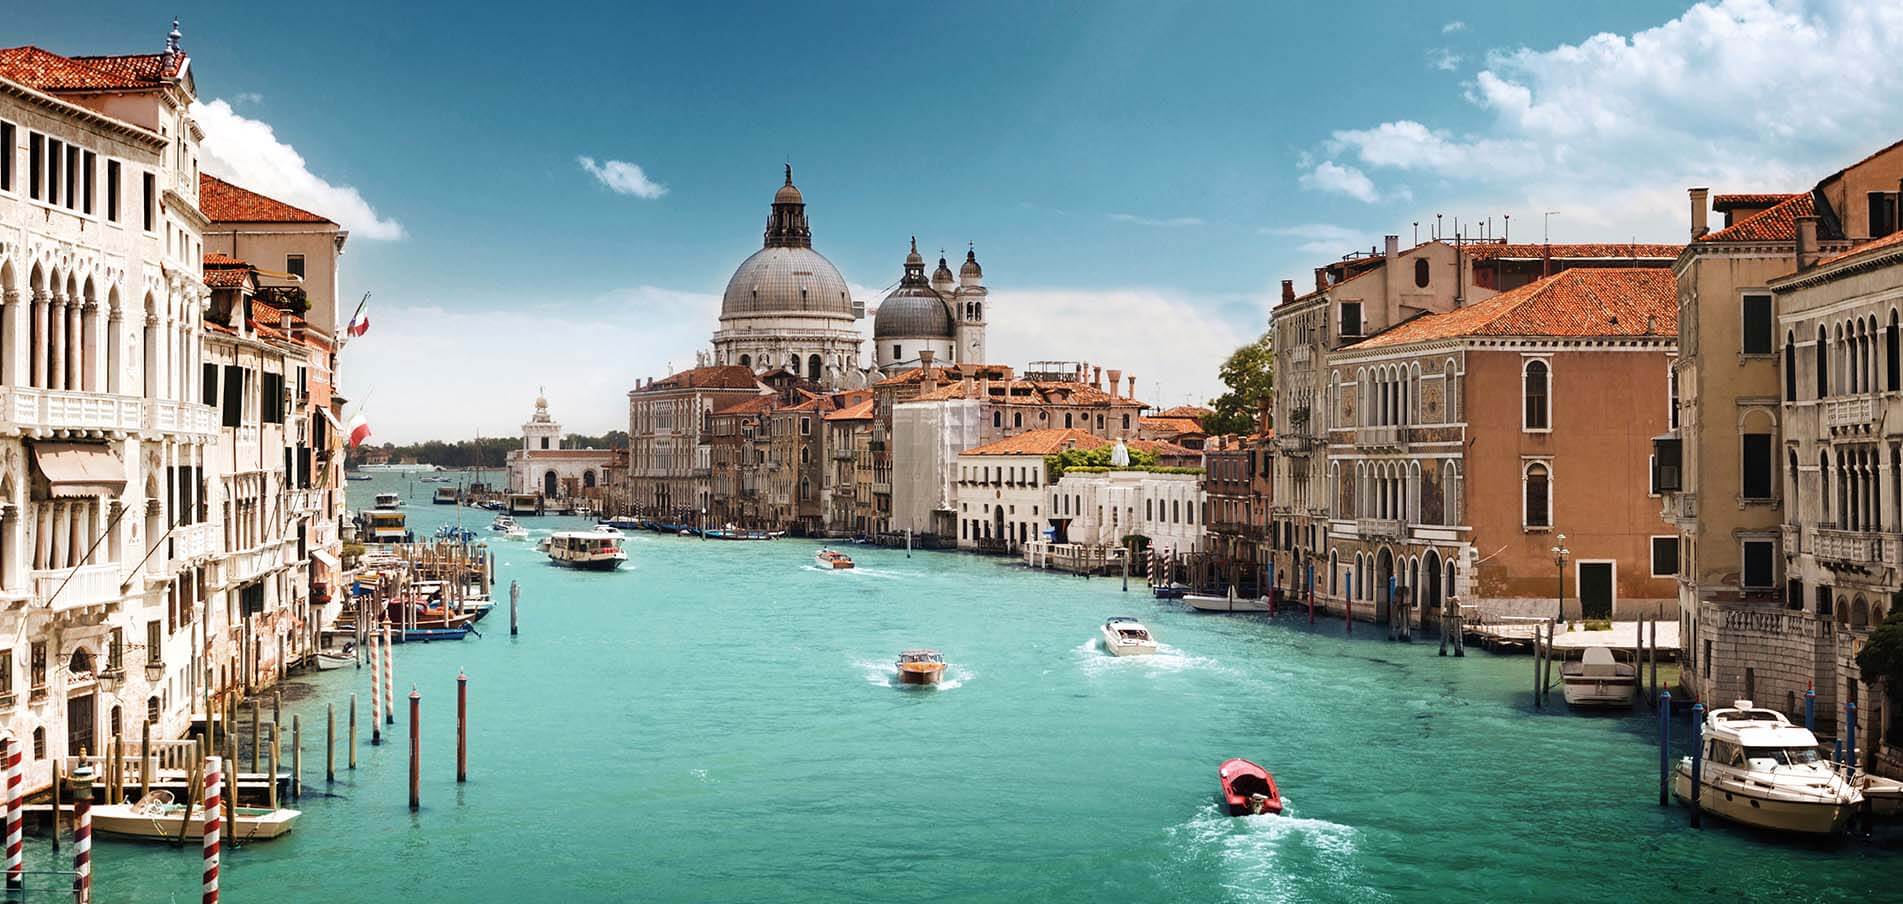 Location de yacht de luxe Venise